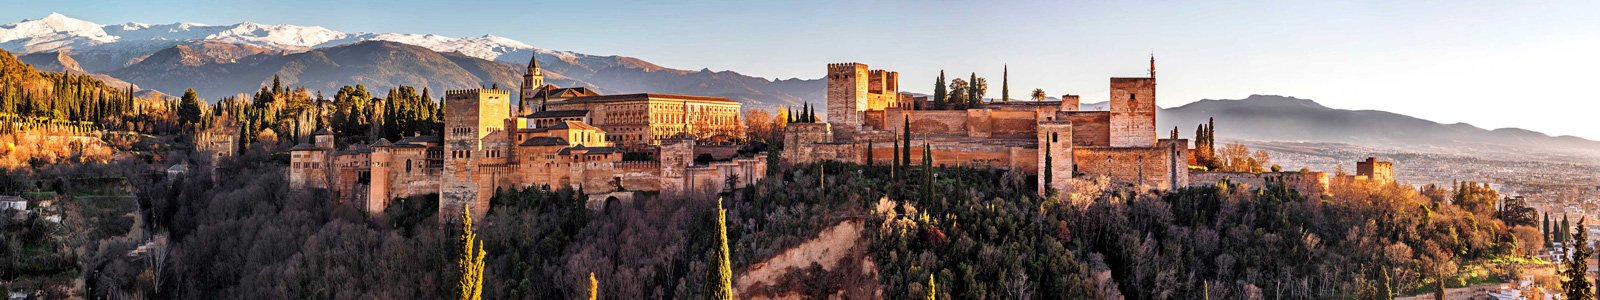 №7190 - Замок в Гранаде в лучах солнца, Испания